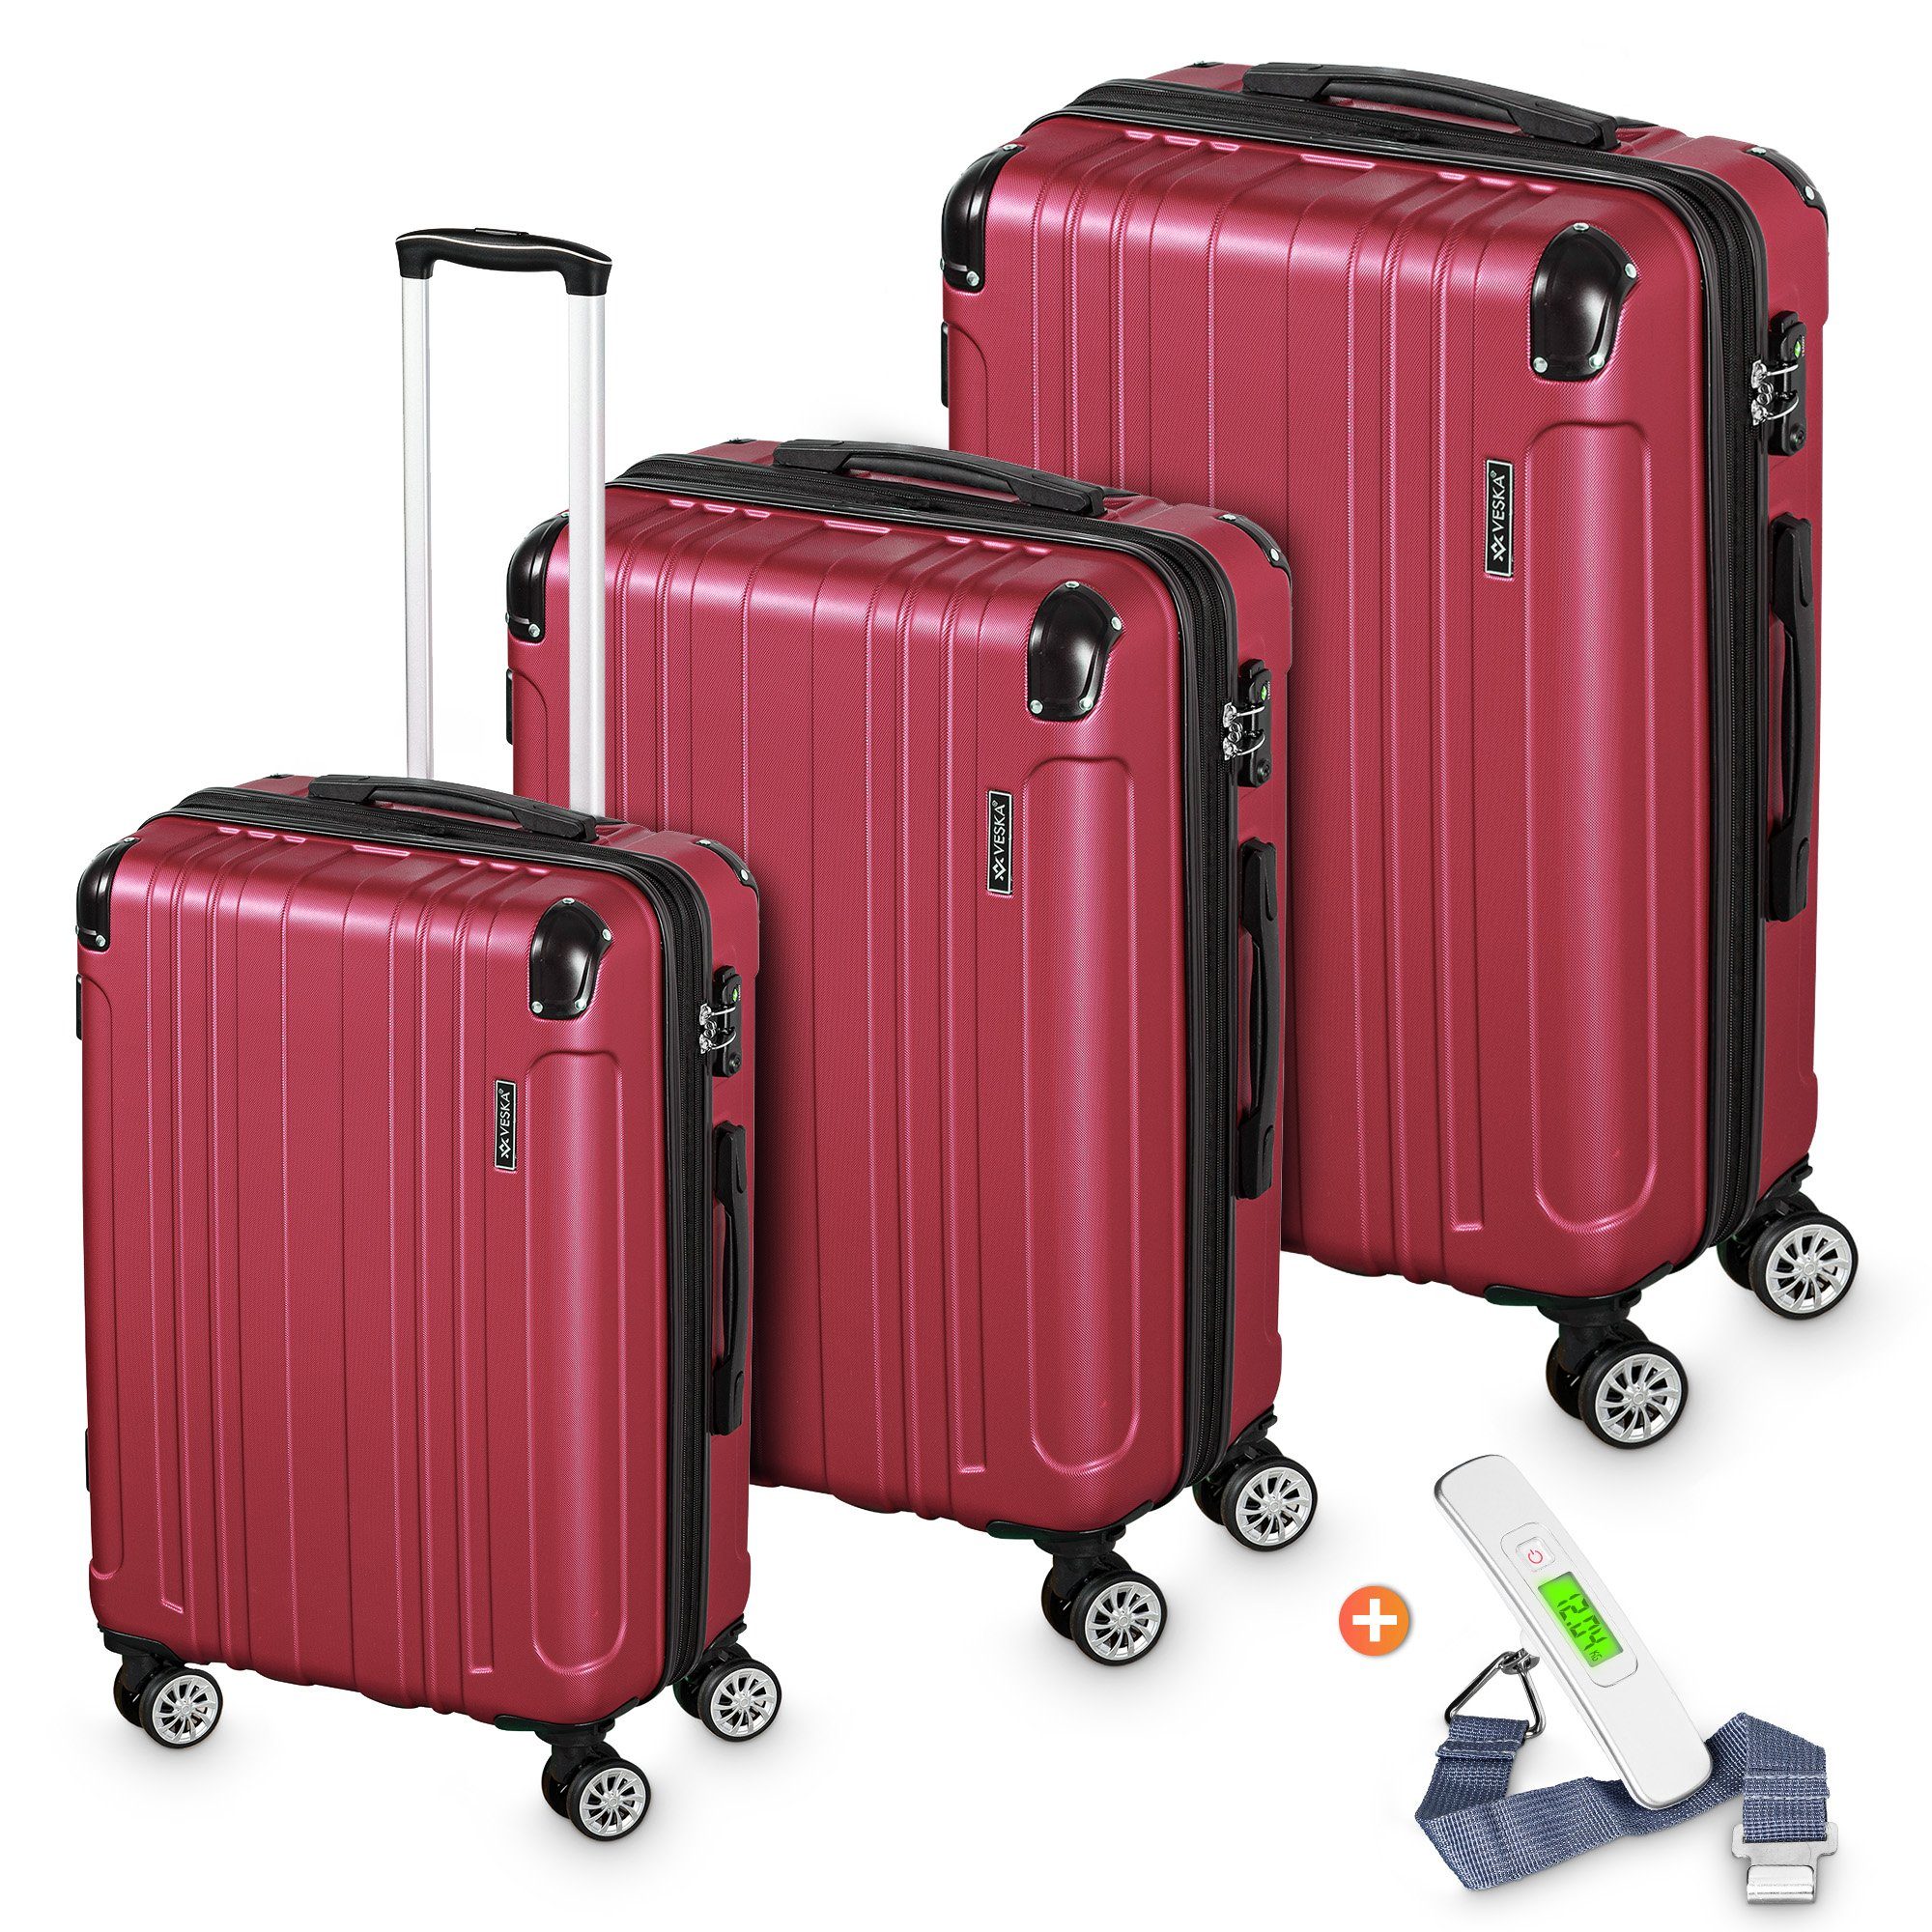 VESKA Trolleyset Hartschalenkoffer Kofferset 3 teilig mit TSA Zahlenschloss 4 Rollen, ABS-Hartschale, Reisekoffer Trolley Rollkoffer Koffer berry | Trolley-Sets